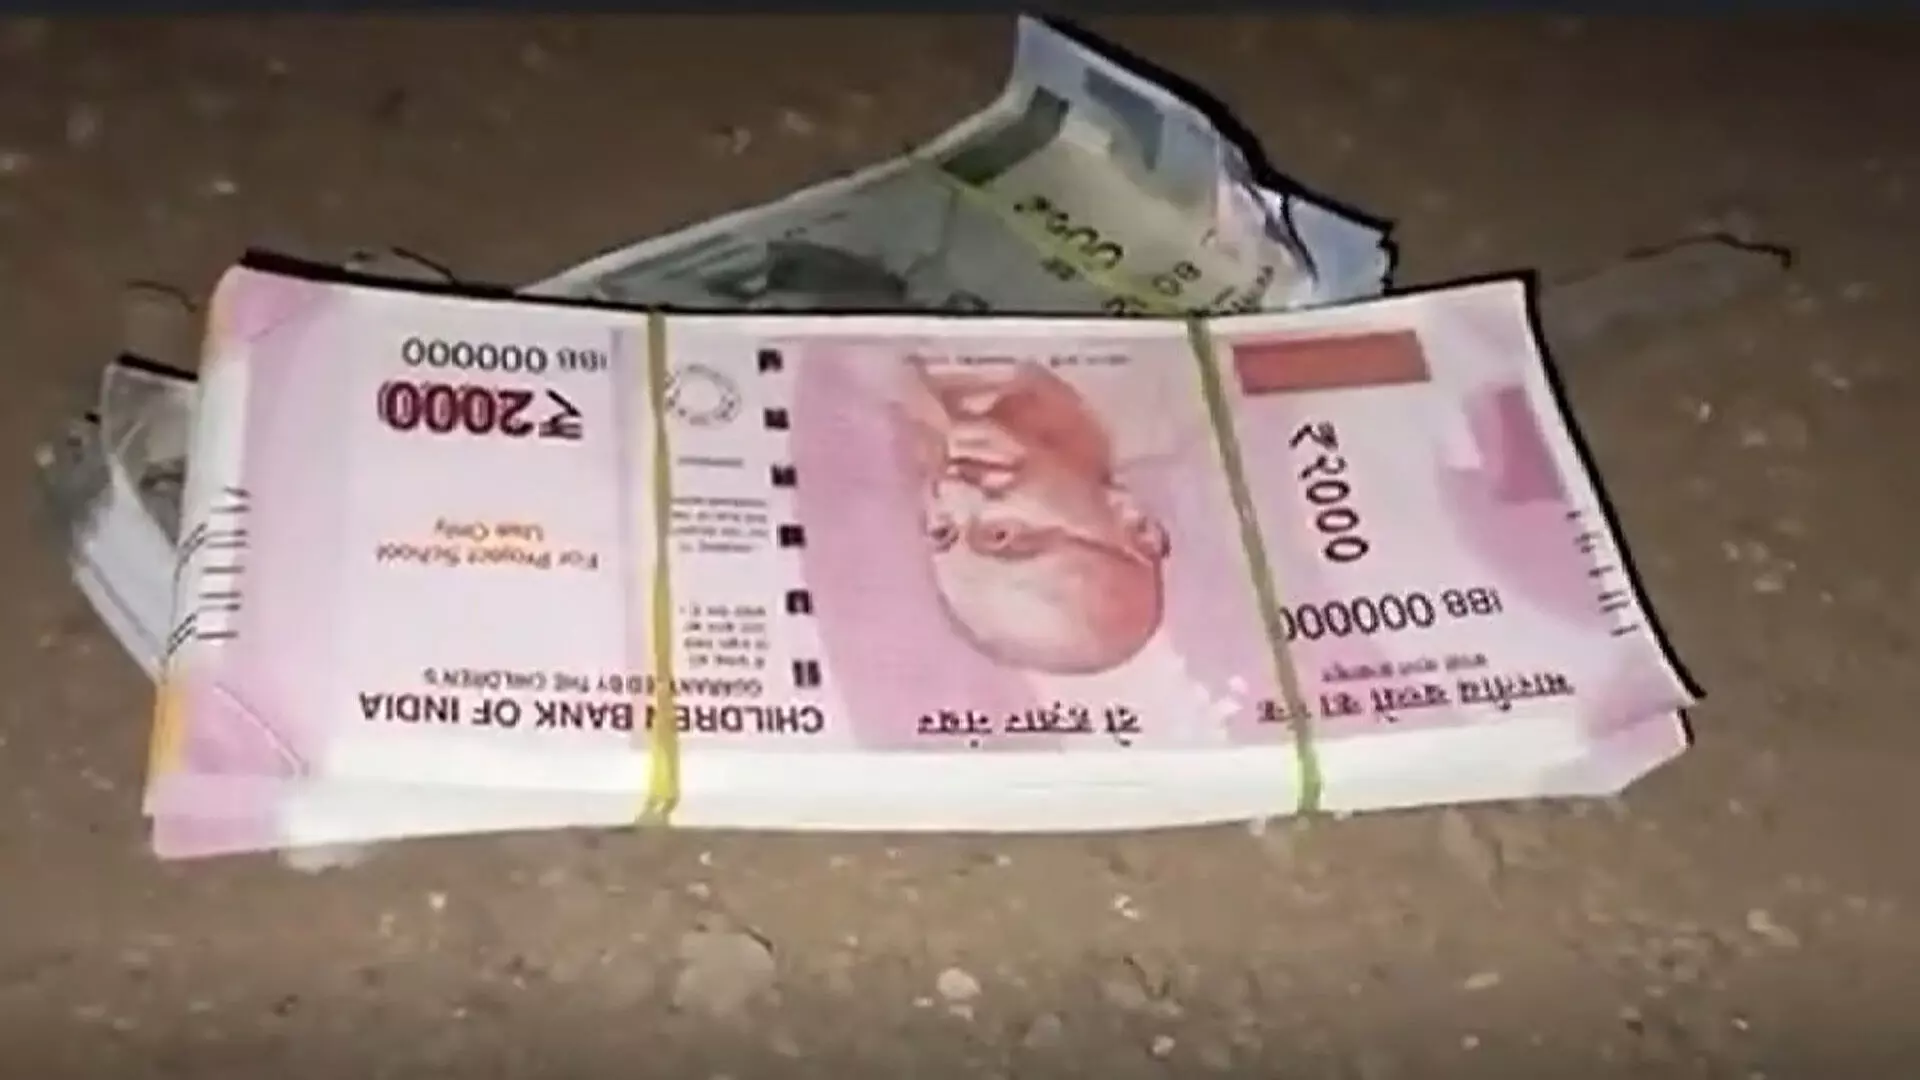 नेरुल में चिल्ड्रन बैंक ऑफ इंडिया छपे नकली नोट रखने के आरोप में 2 लोग गिरफ्तार